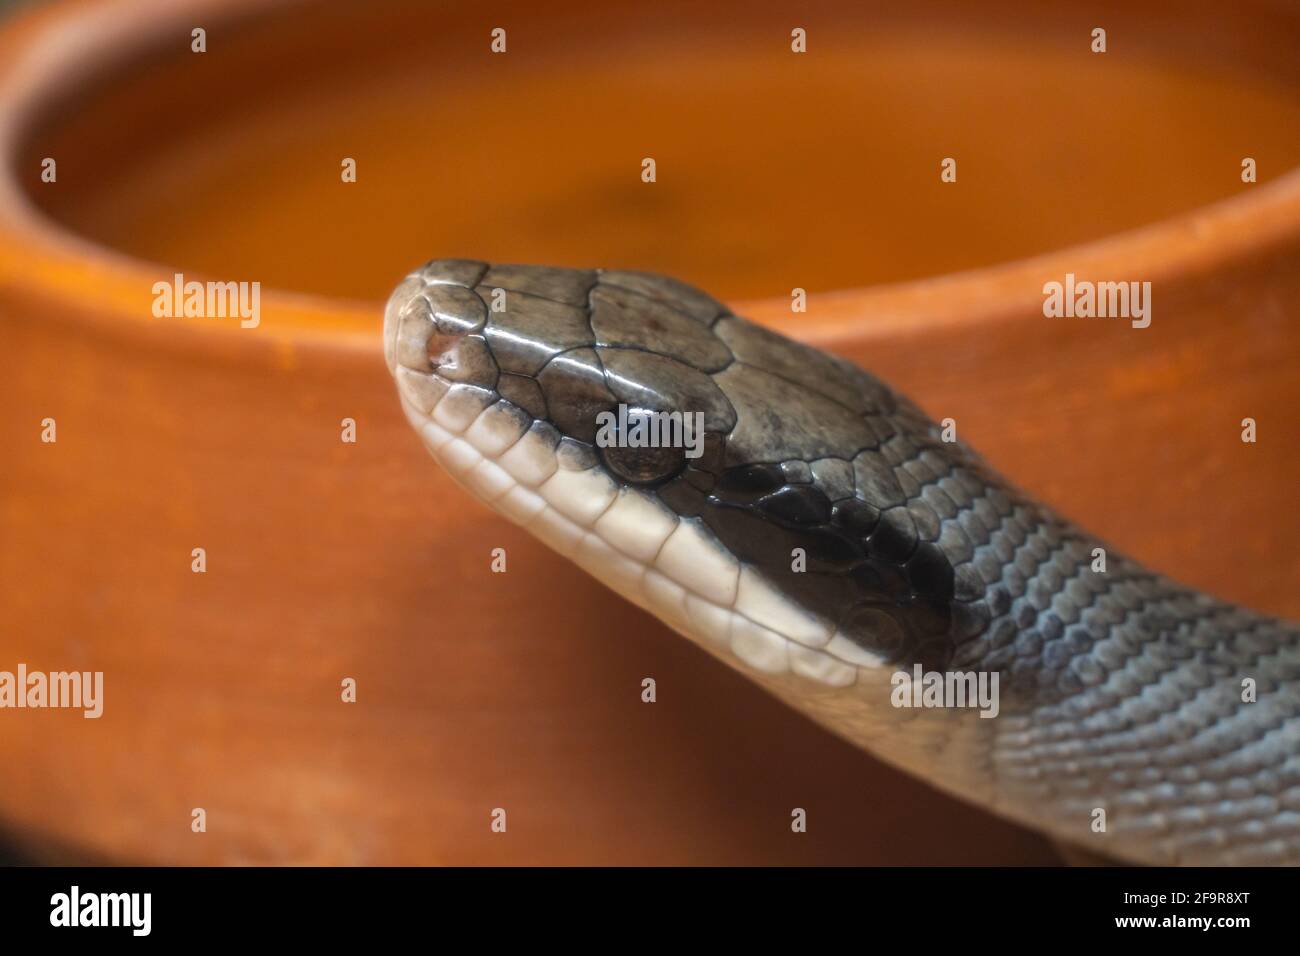 Gros plan tête de serpent sur le fond d'un pot d'argile dans la nature Banque D'Images